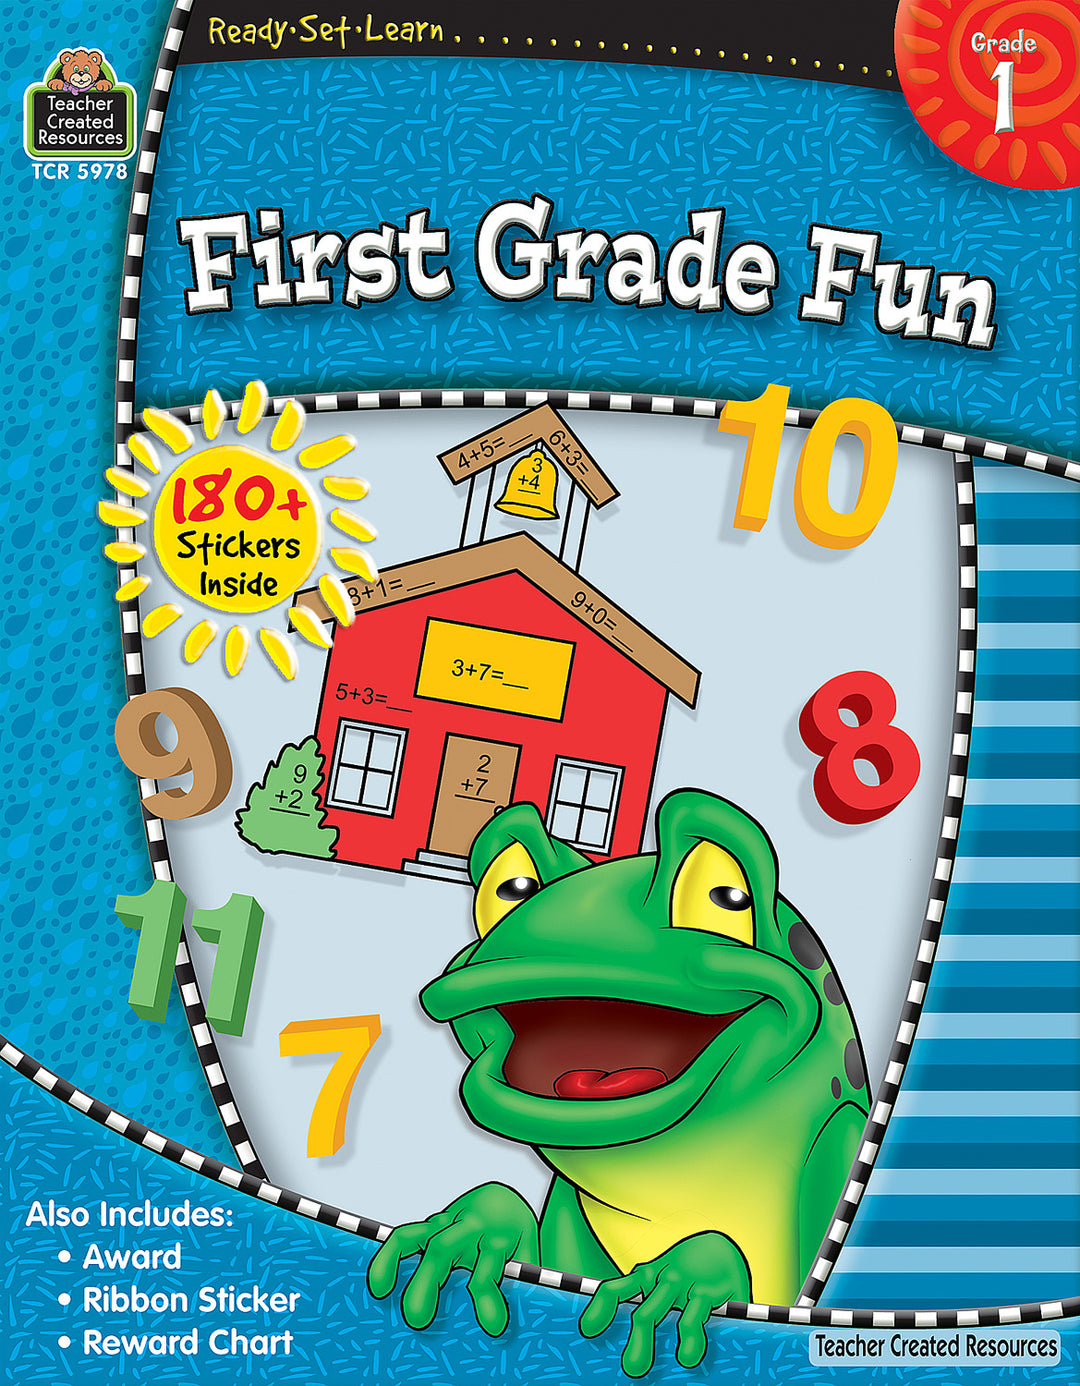 RSL: First Grade Fun (Gr. 1)